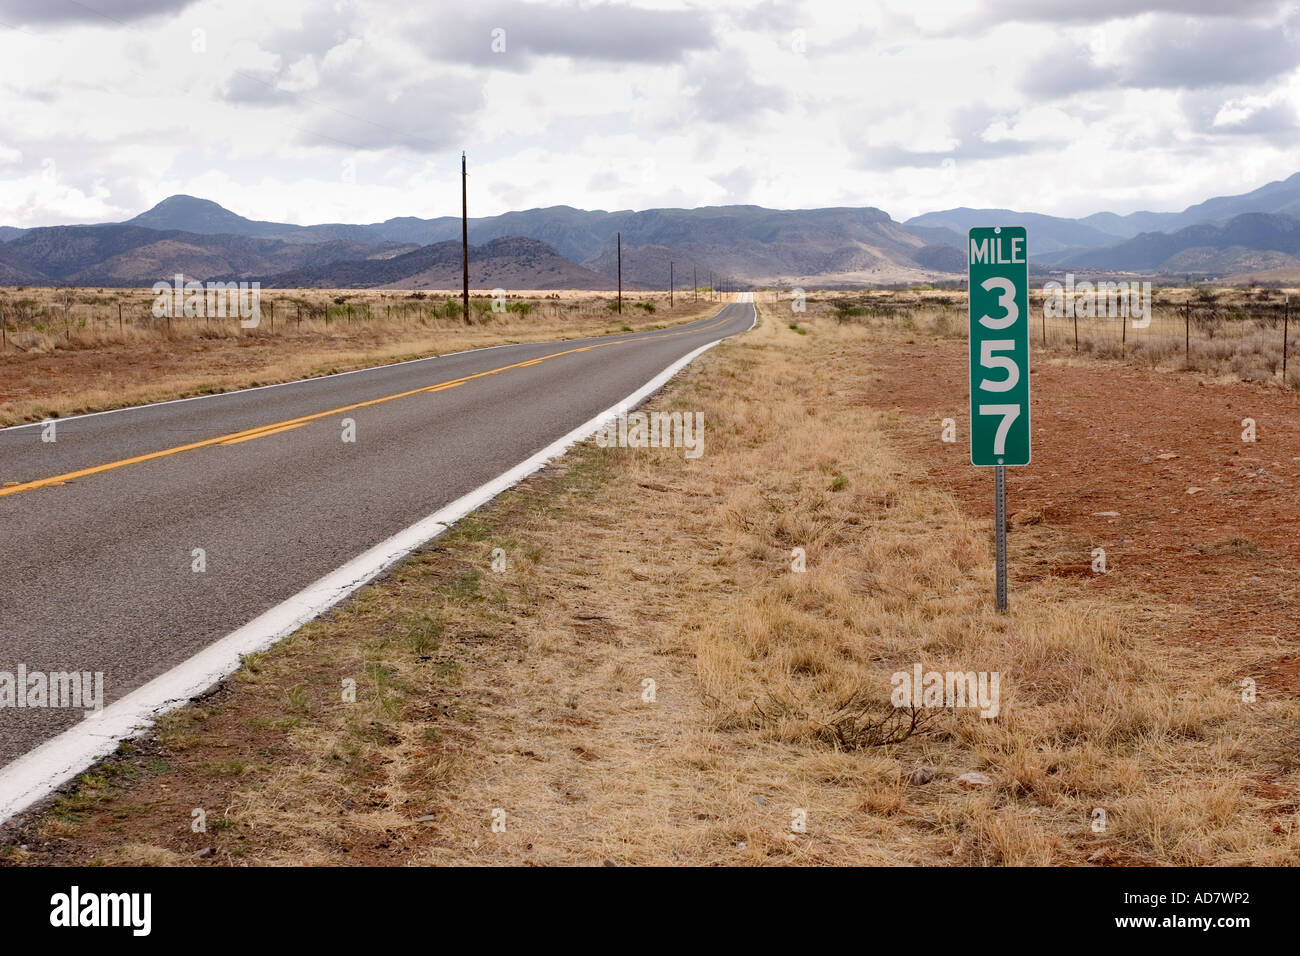 Borne Mile 357 sur une autoroute américaine au sud de Wilcox Arizona Banque D'Images